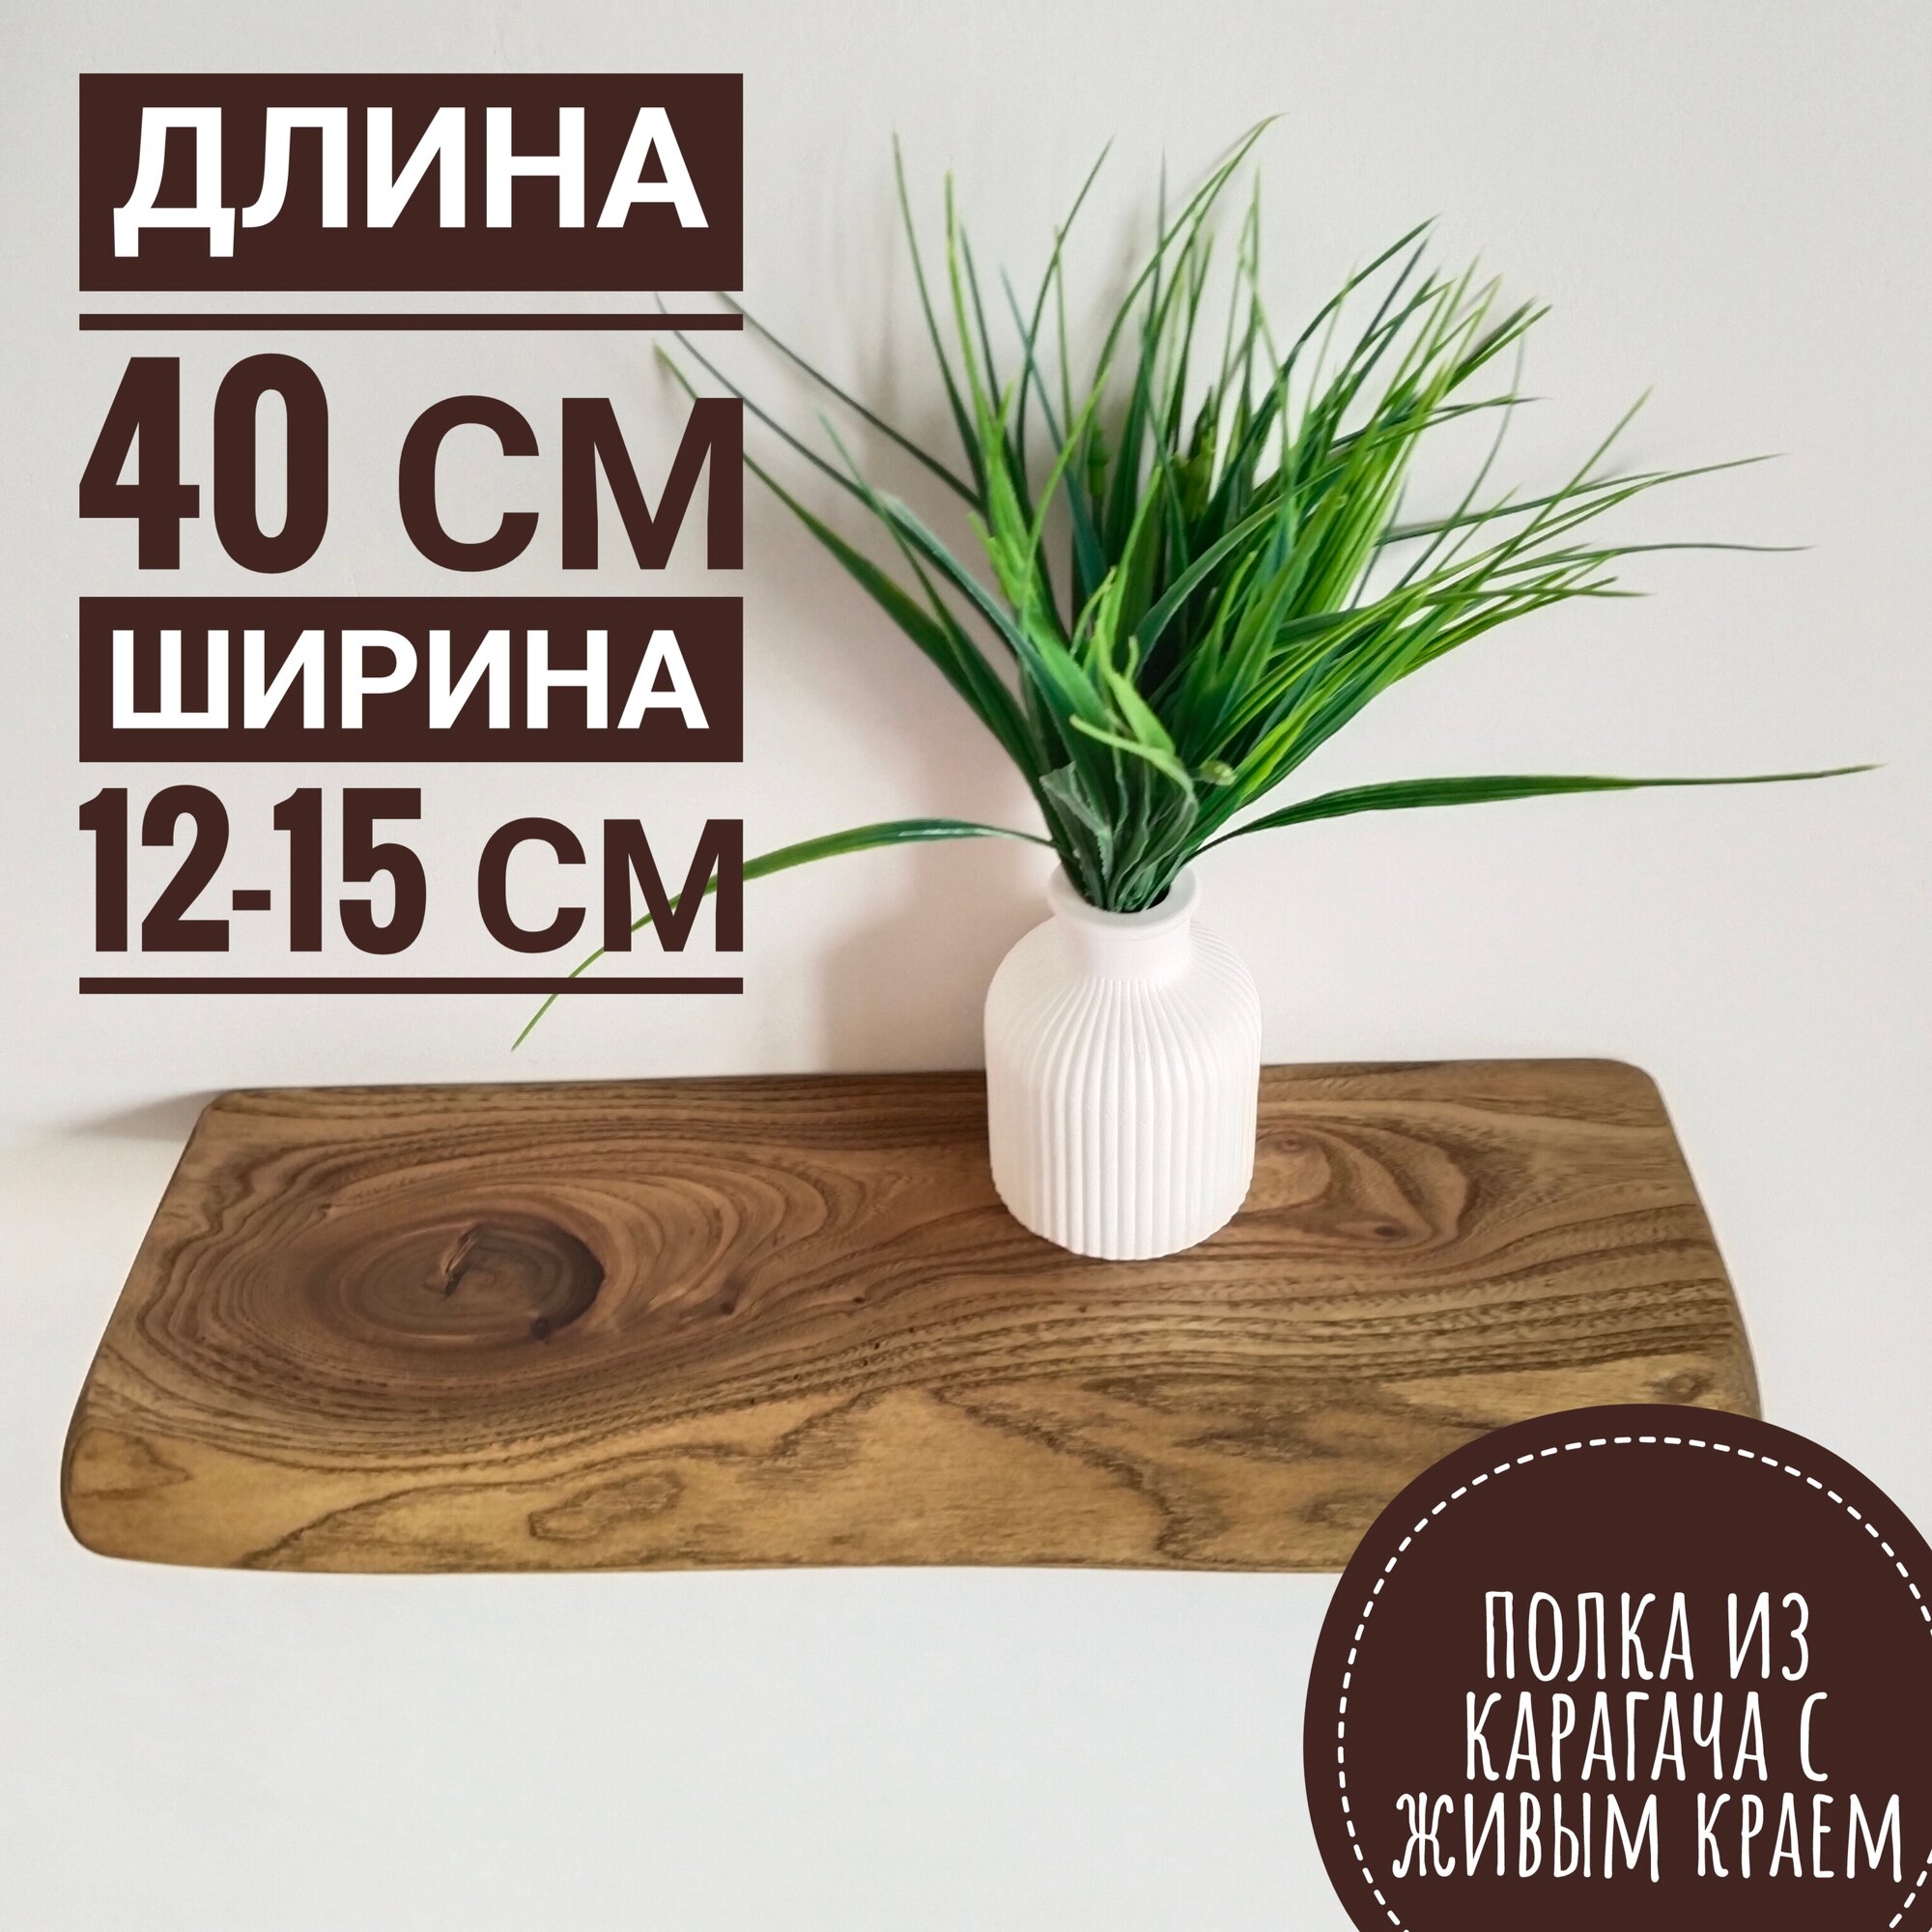 Деревянная полка с живым краем 40 см, 12-15